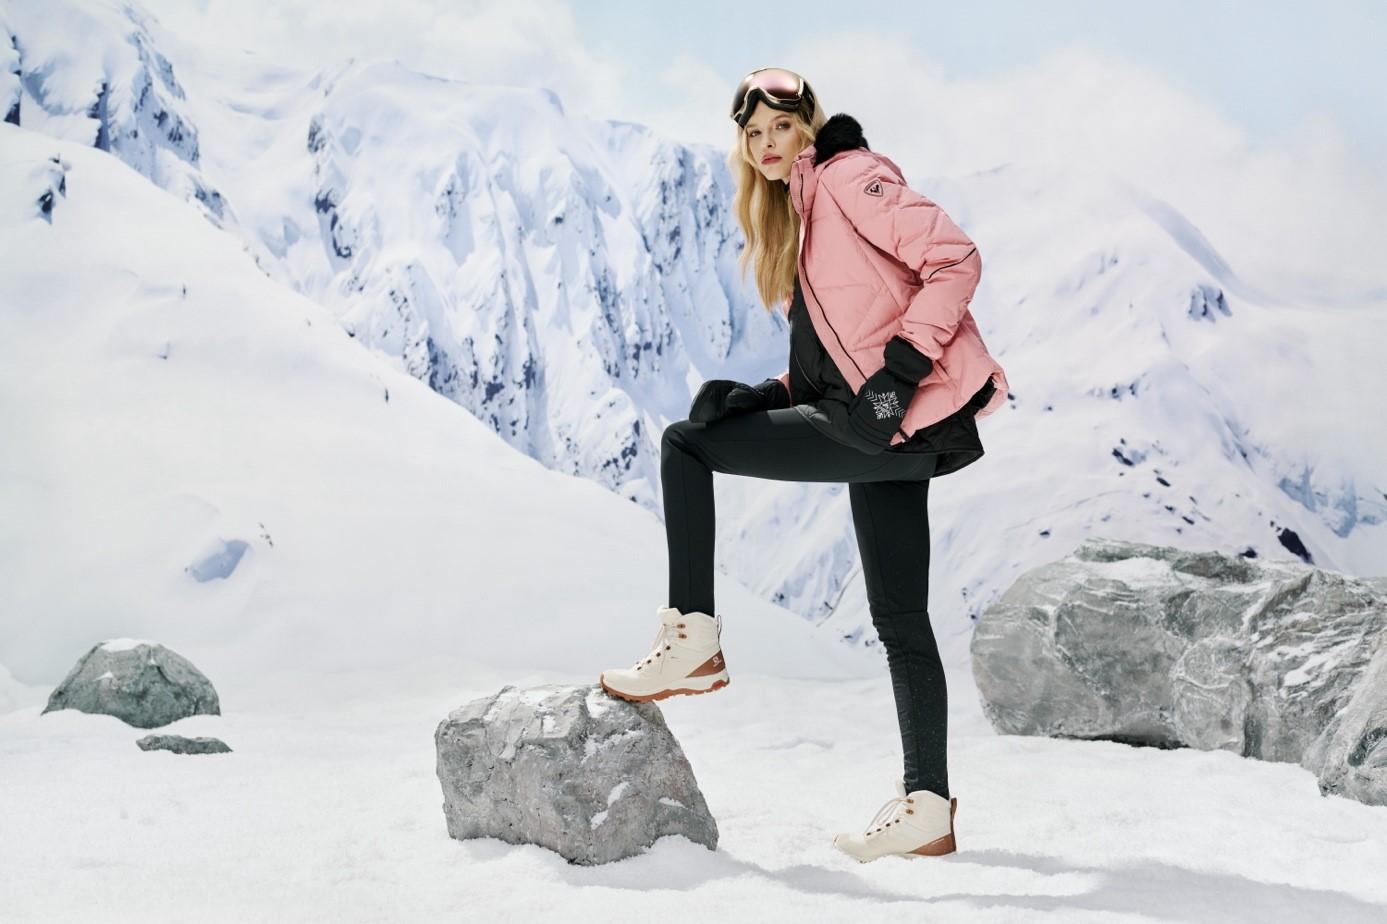 Obraz zawierający ubrania, obuwie, śnieg, na wolnym powietrzu

Opis wygenerowany automatycznie